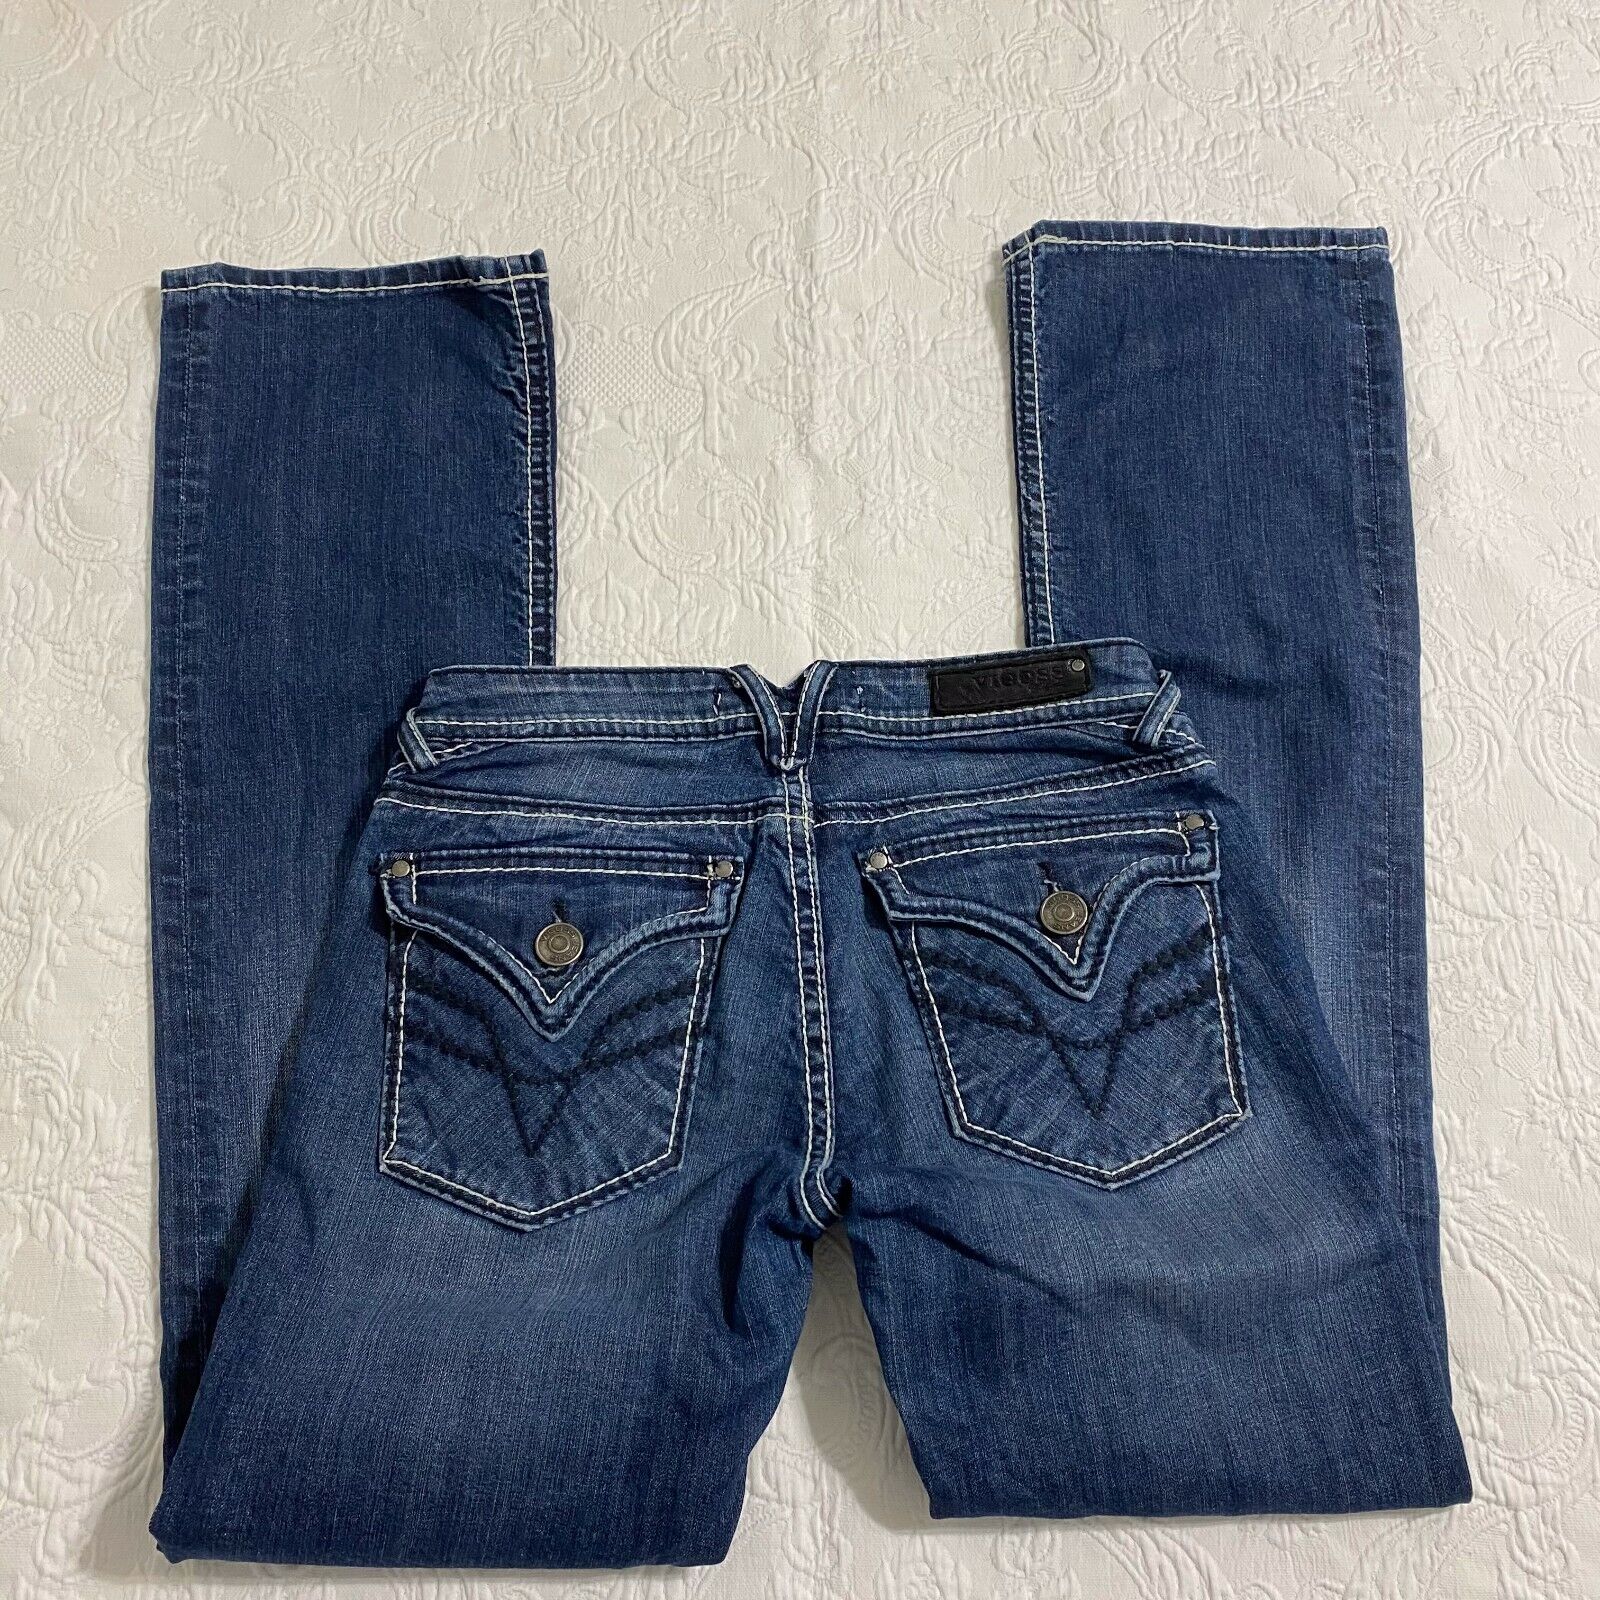 Manufacturer regenerated product Vigoss sale Fit Bootcut Jeans Womens Siz Pockets Denim Flap 98%Cotton